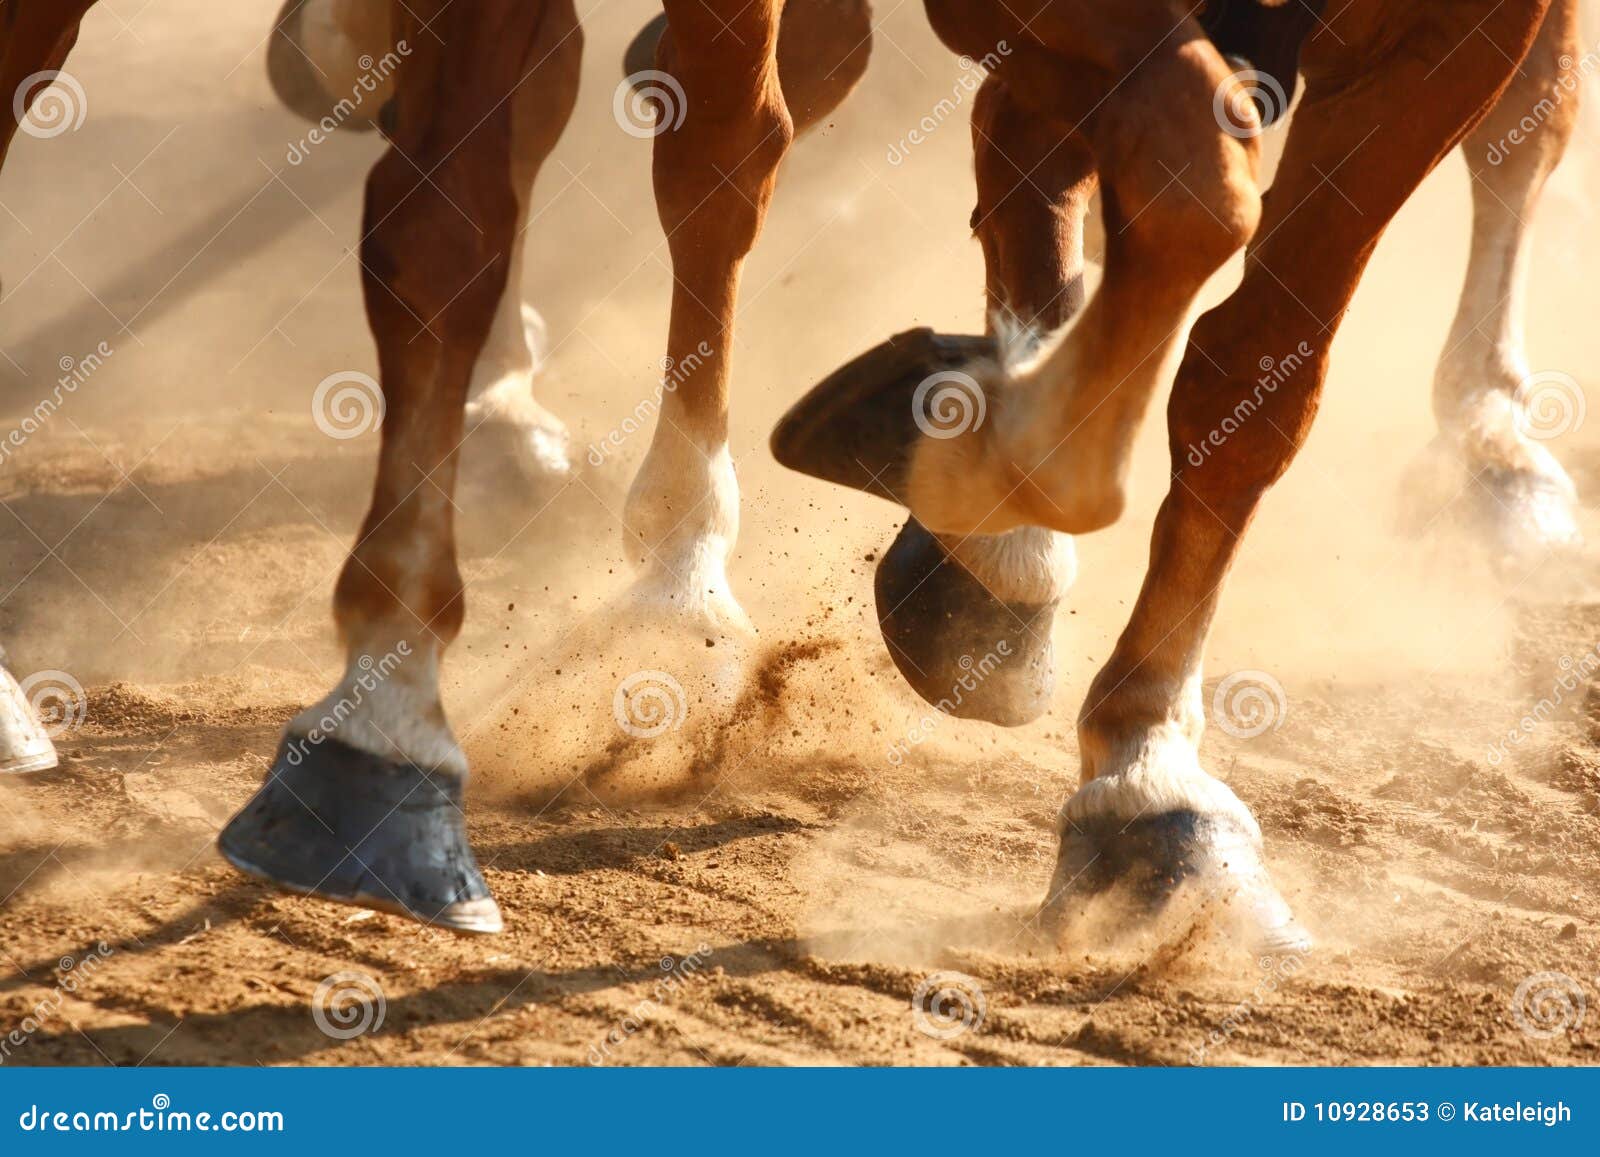 running horses hooves